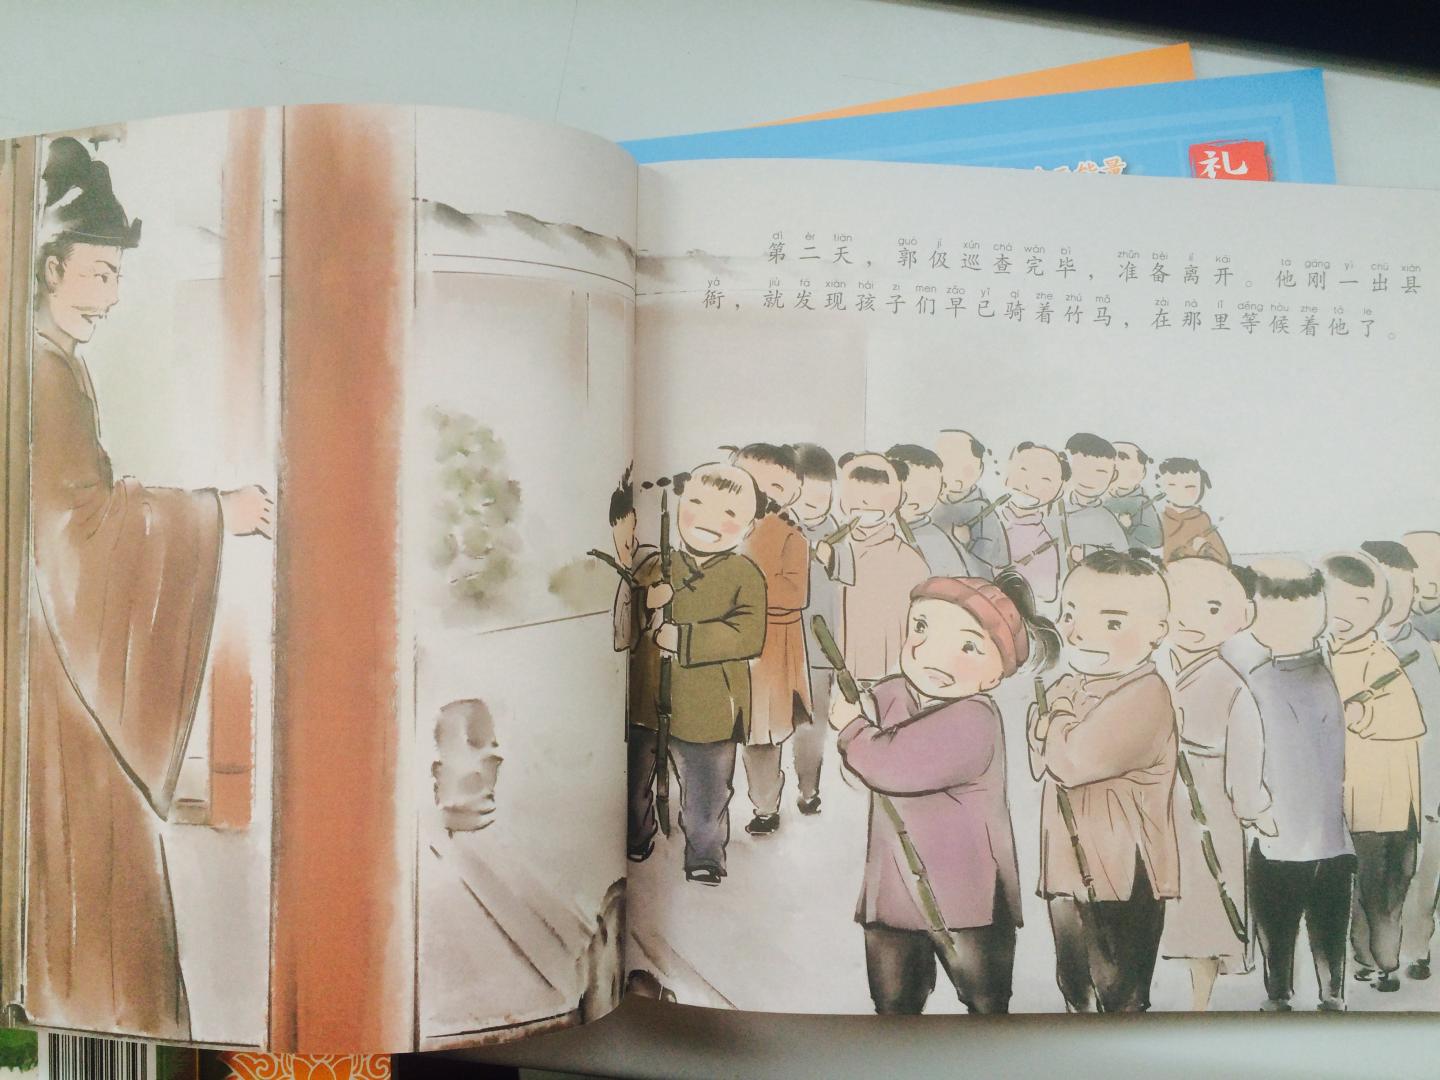 给小孩买了一套，让孩子了解中华五千文化的精髓，从小做个有礼有信的孩子。翻开看了一下，颜色精美，人物画得生动形像，还是绿色环保印刷，出版社用心了，推荐！！！